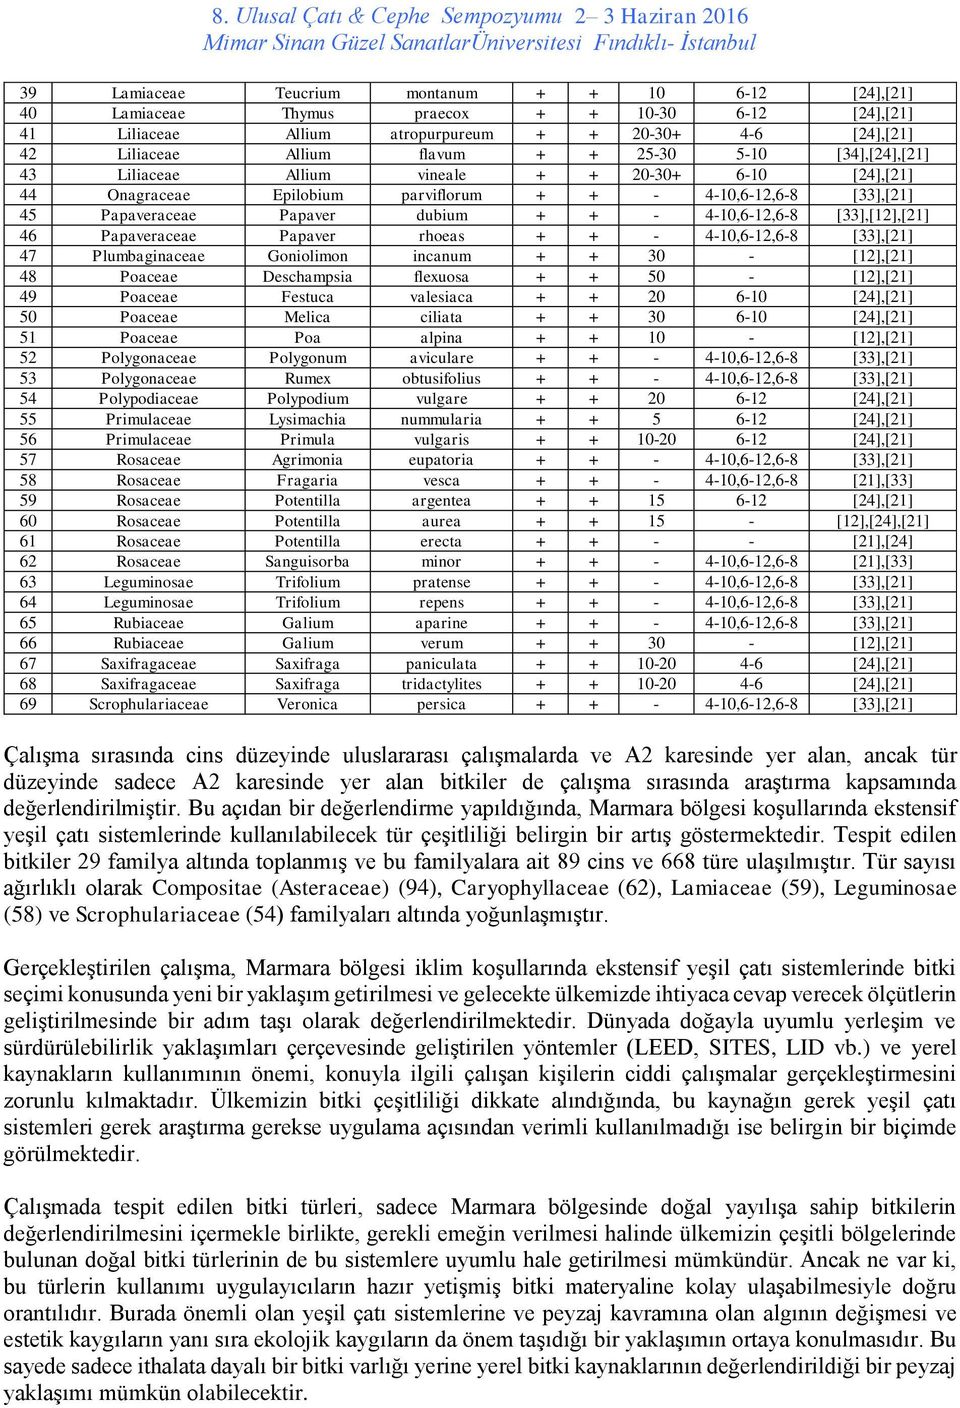 [33],[12],[21] 46 Papaveraceae Papaver rhoeas + + - 4-10,6-12,6-8 [33],[21] 47 Plumbaginaceae Goniolimon incanum + + 30 - [12],[21] 48 Poaceae Deschampsia flexuosa + + 50 - [12],[21] 49 Poaceae